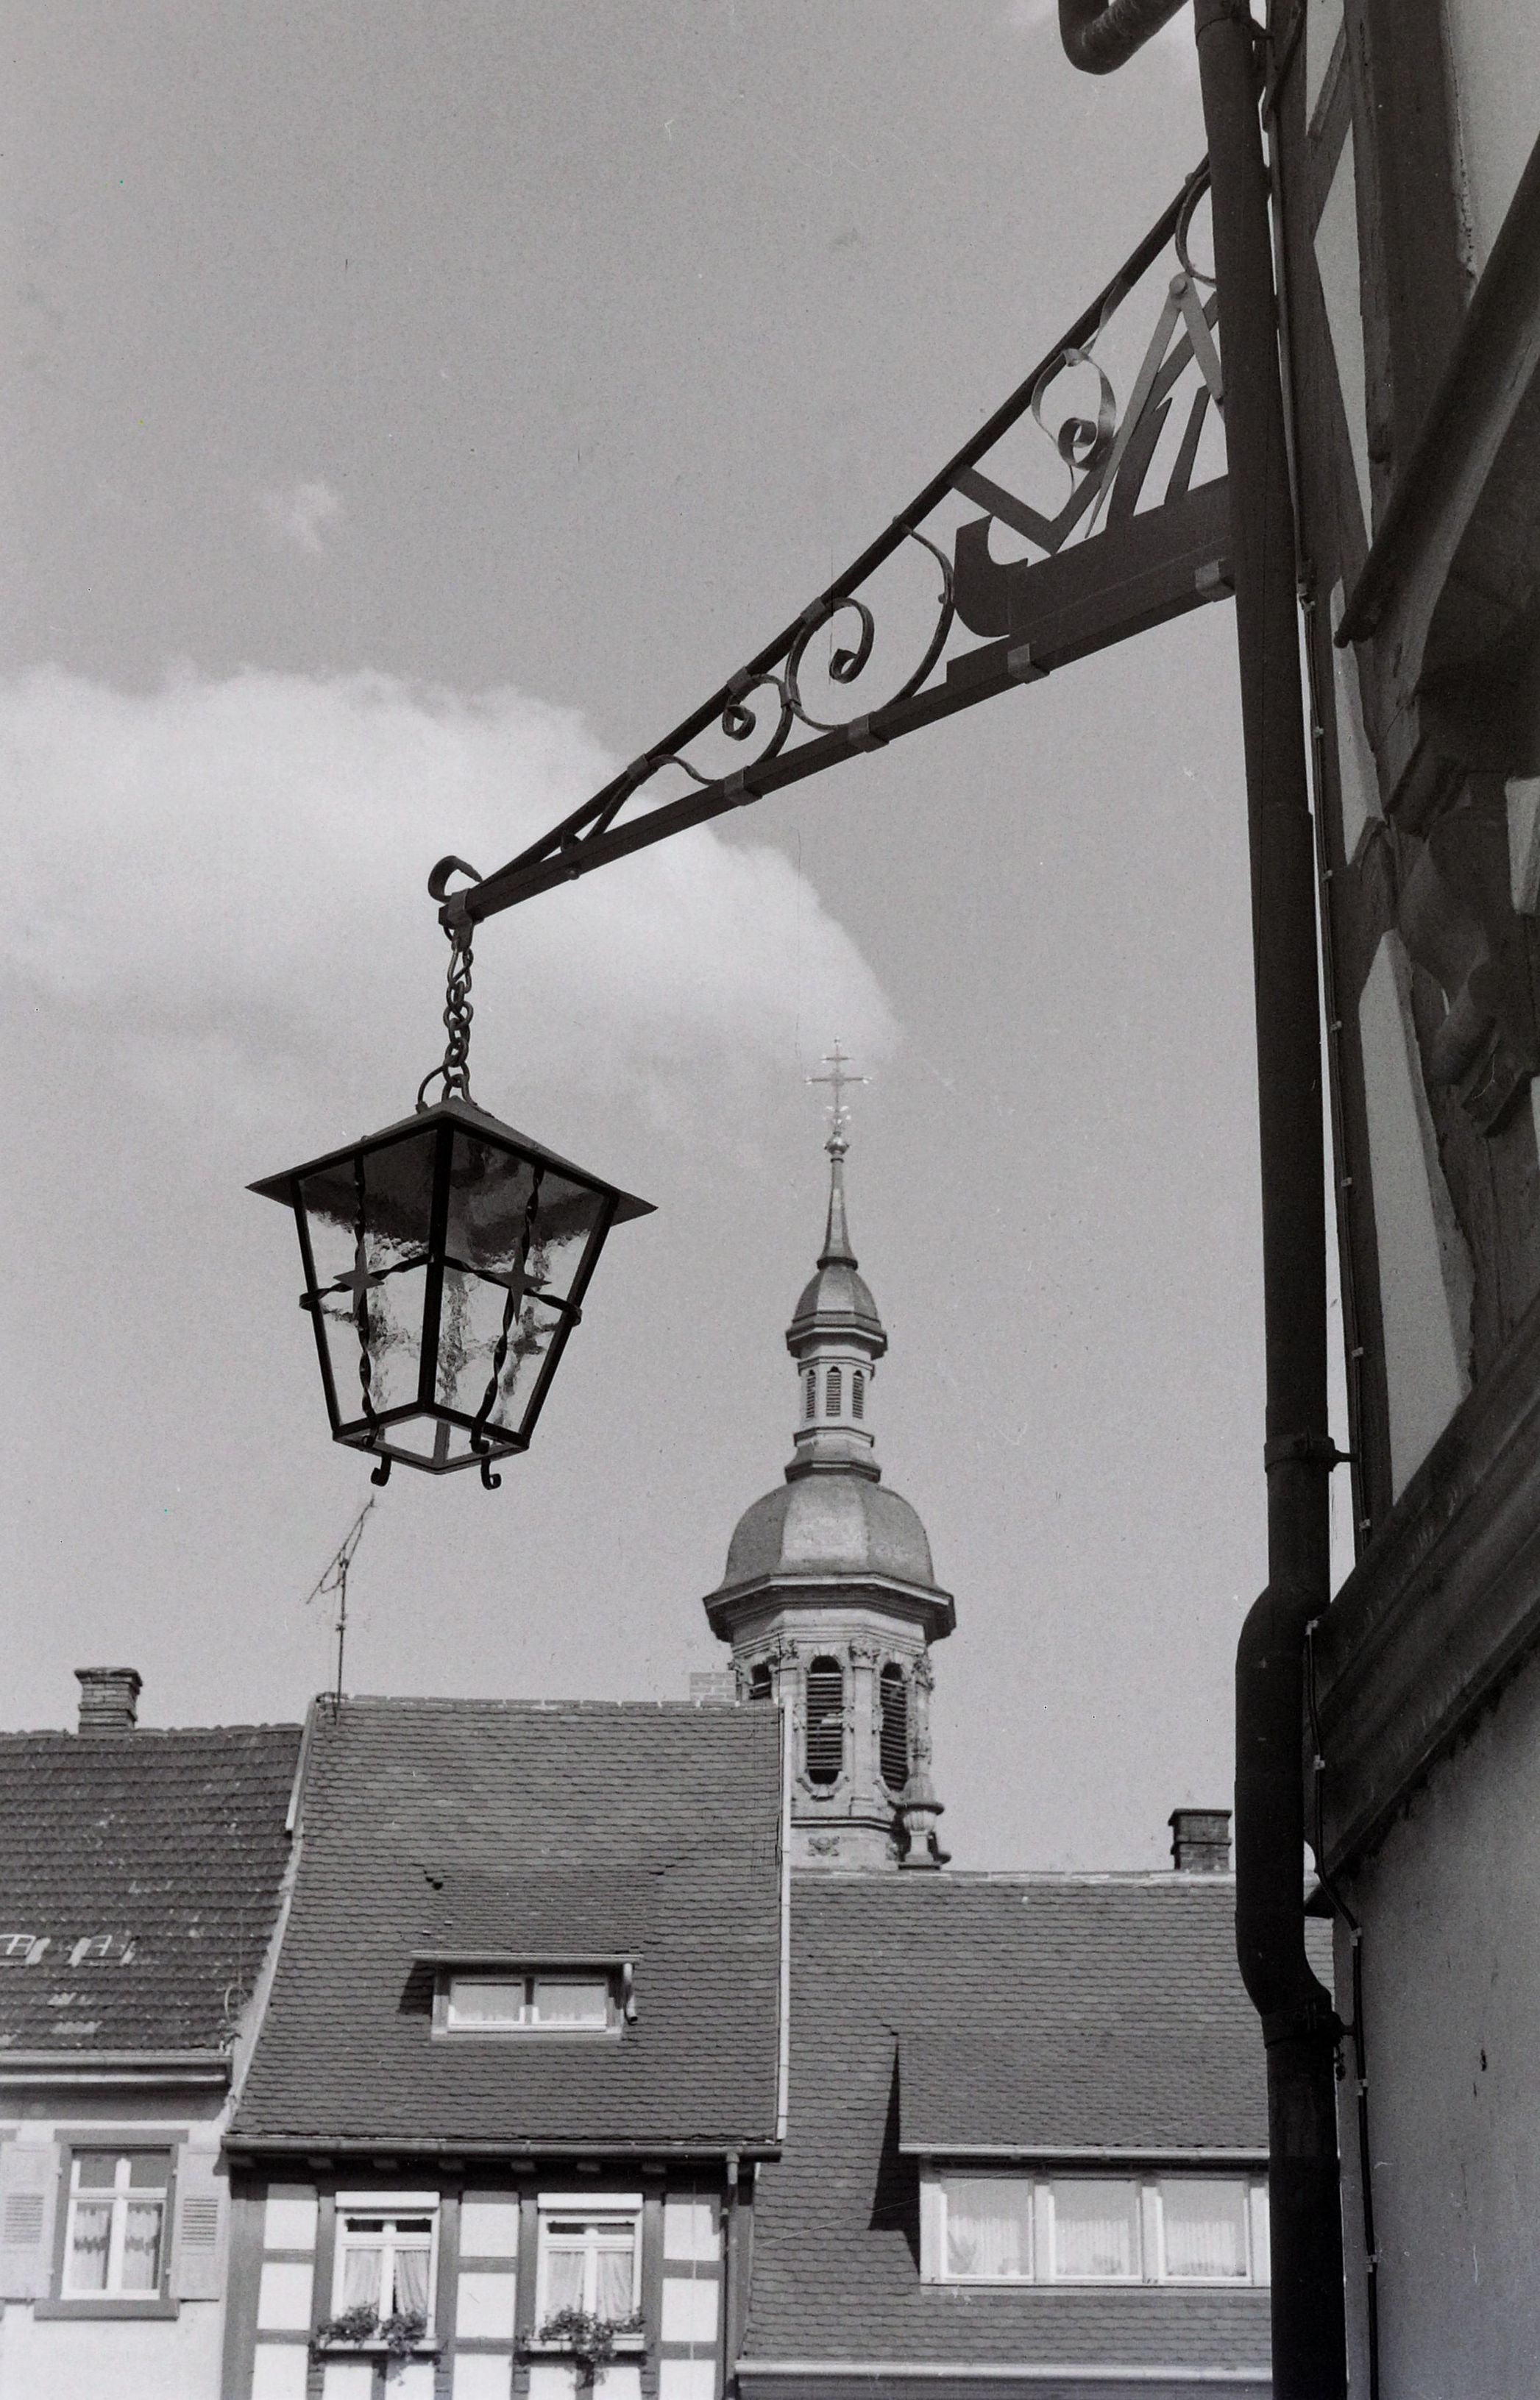 Blick auf eine neue Lampe mit Schreiner-Emplem verbunden und im Hintergrund der Kirchturm von St. Marien- Stadtkirche